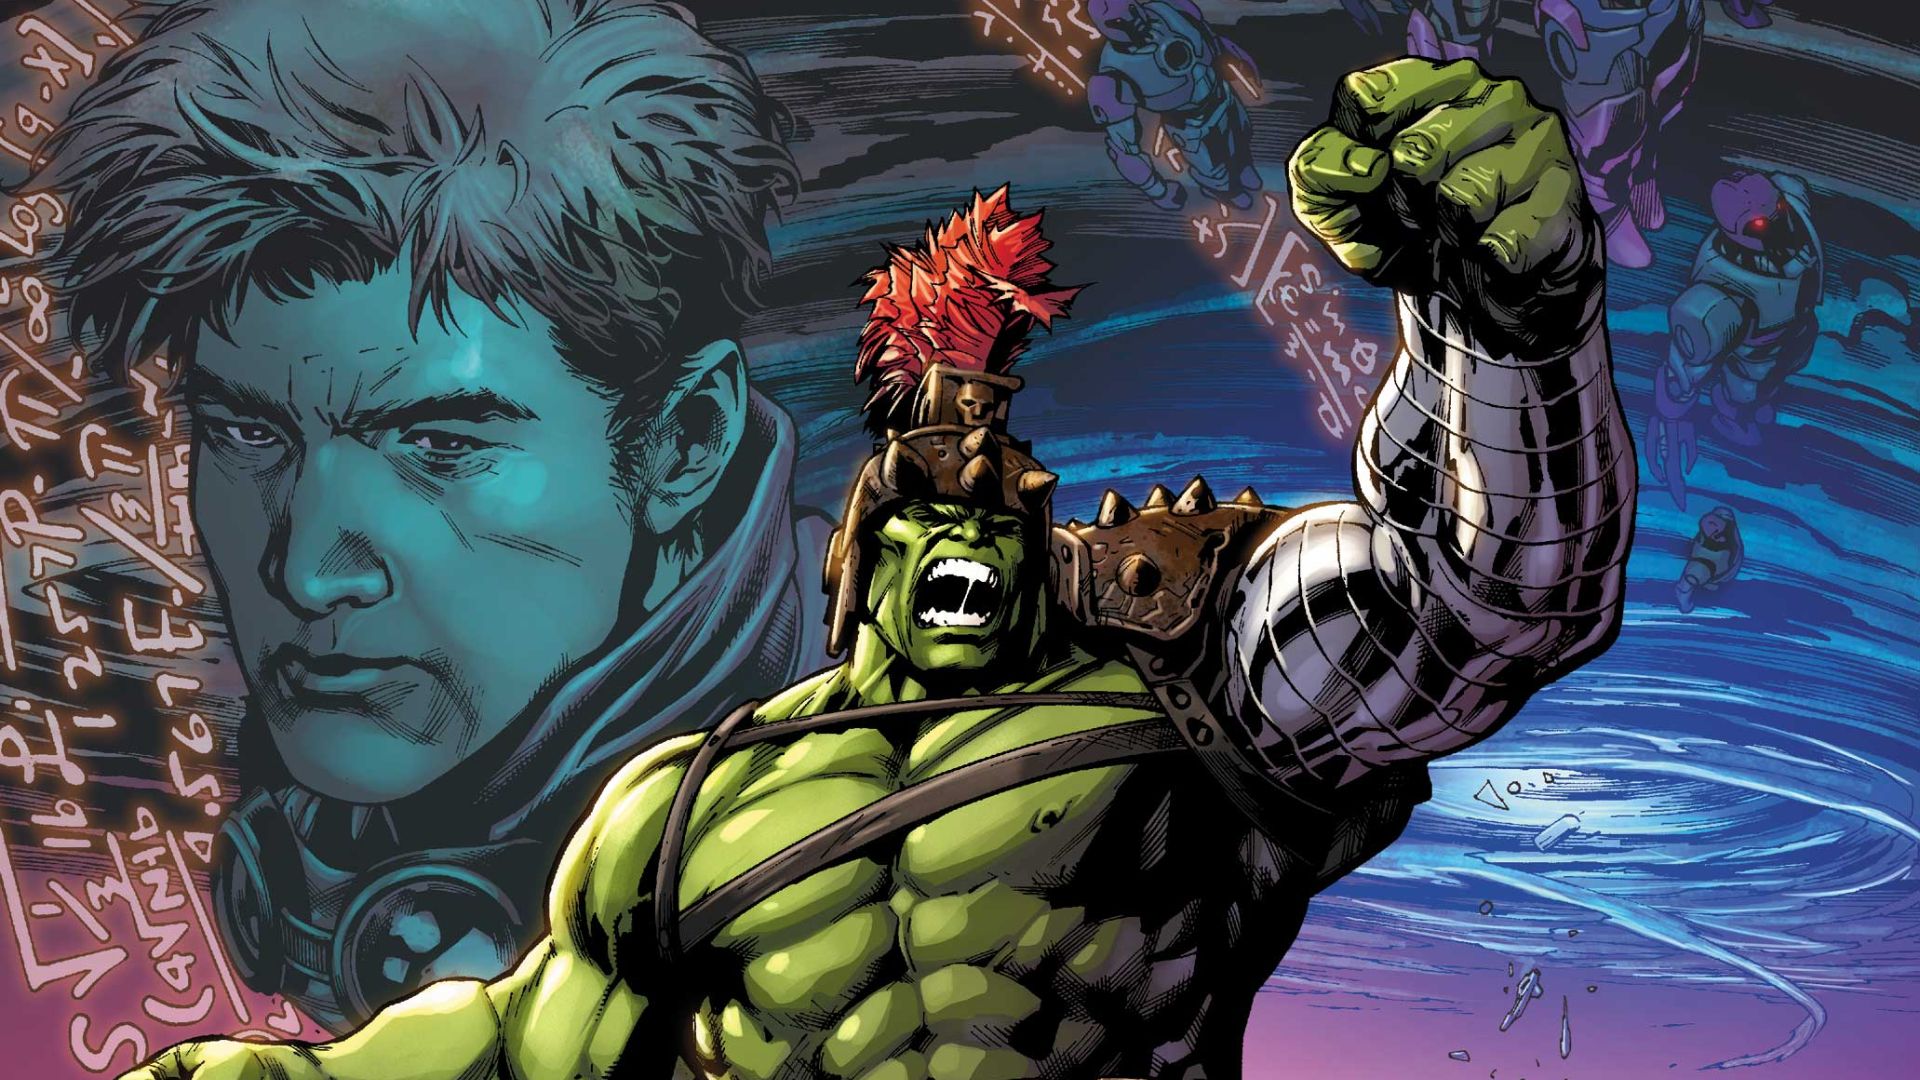 Planet Hulk gets a sequel as the Hulk returns to Sakaar | GamesRadar+